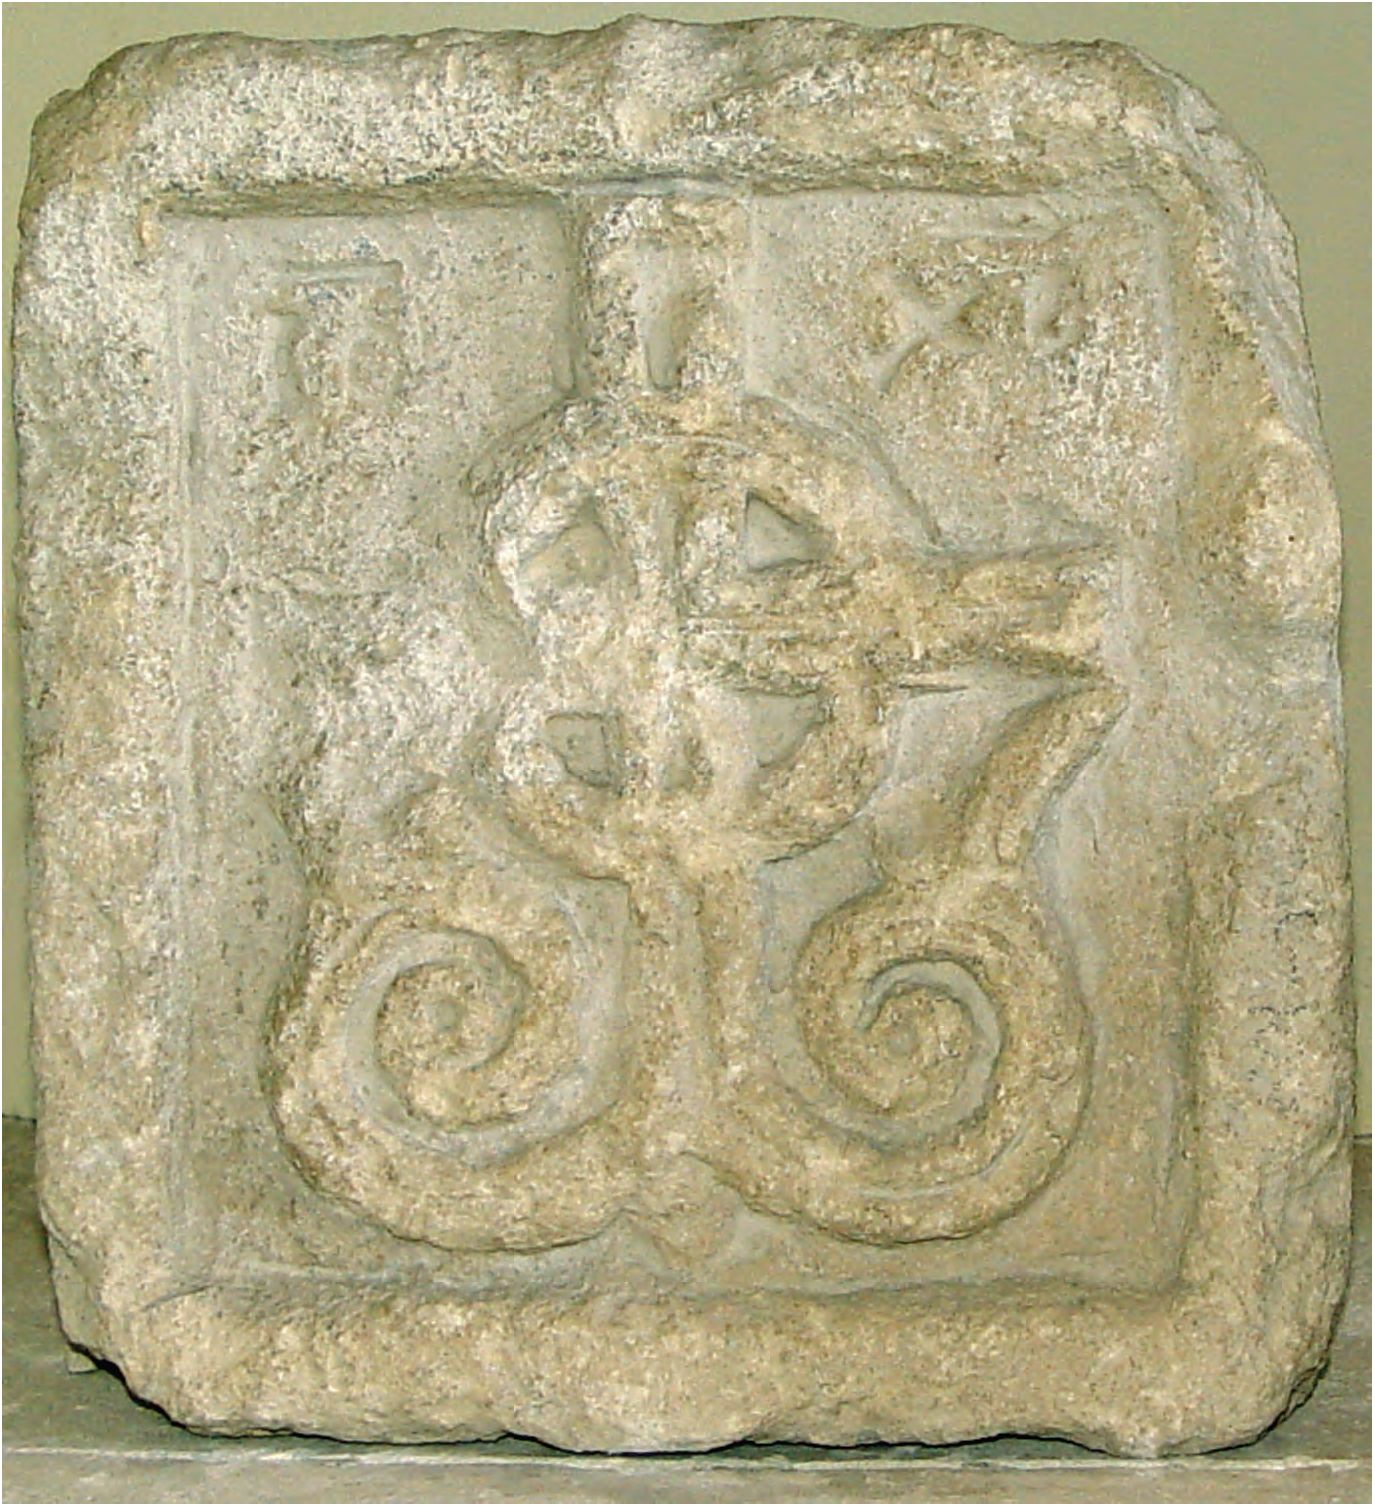 35. Известняковая плита с изображением креста